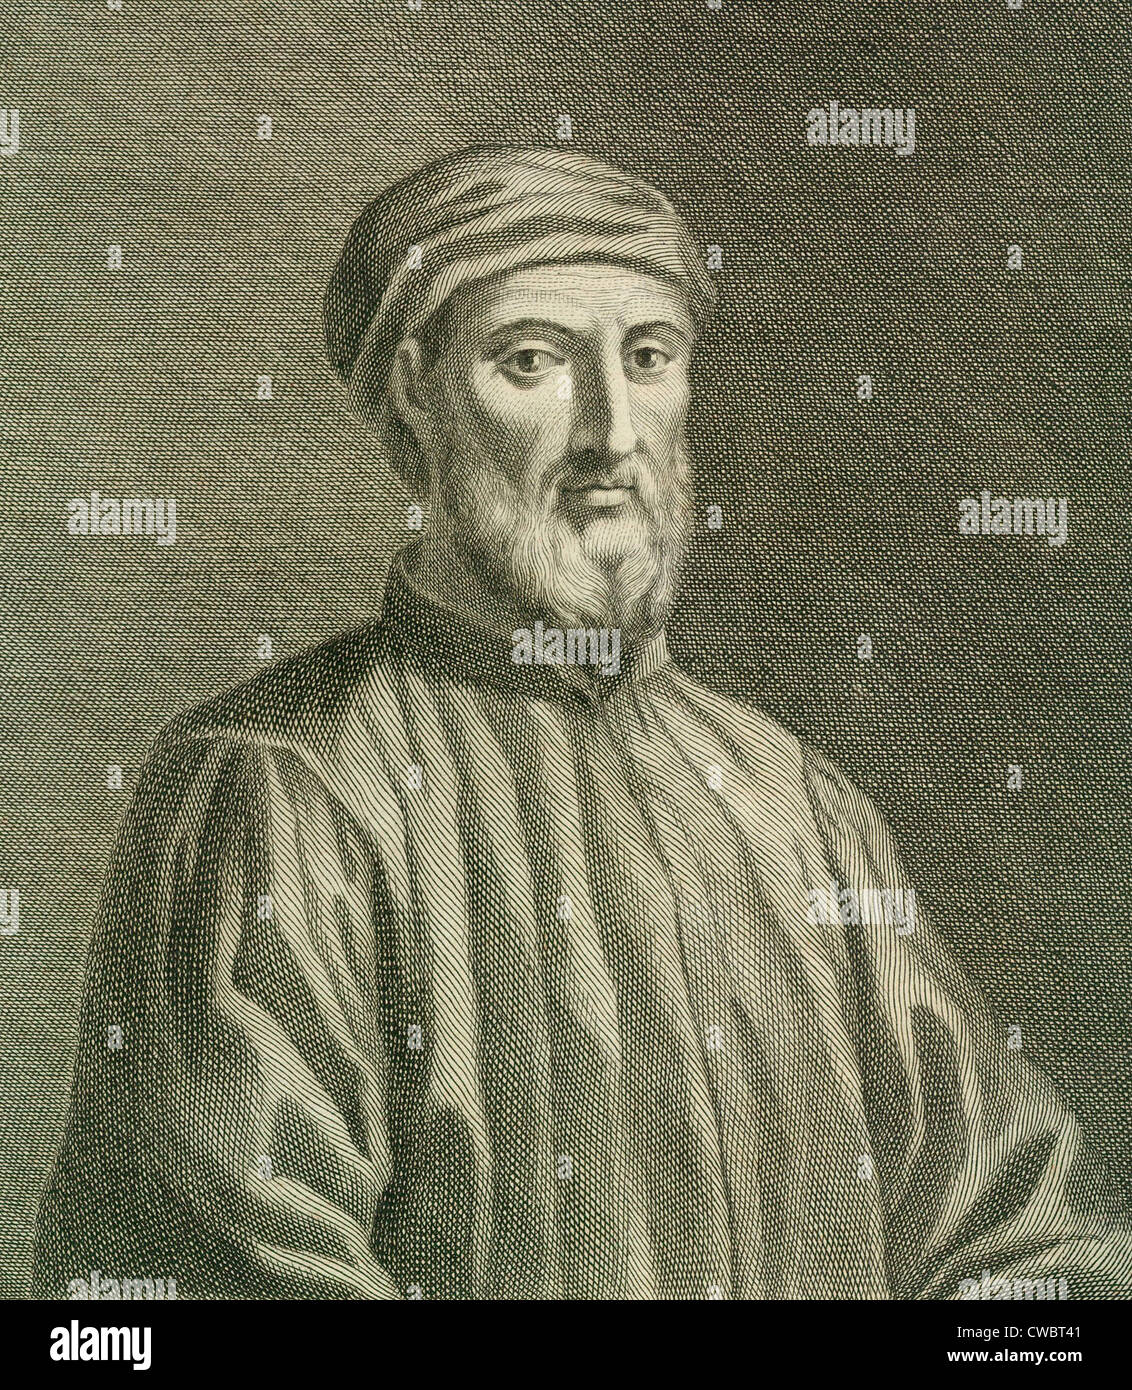 Donatello (1386-1466), el más importante escultor renacentista italiano del siglo XV, empleado mayor naturalismo en su Foto de stock